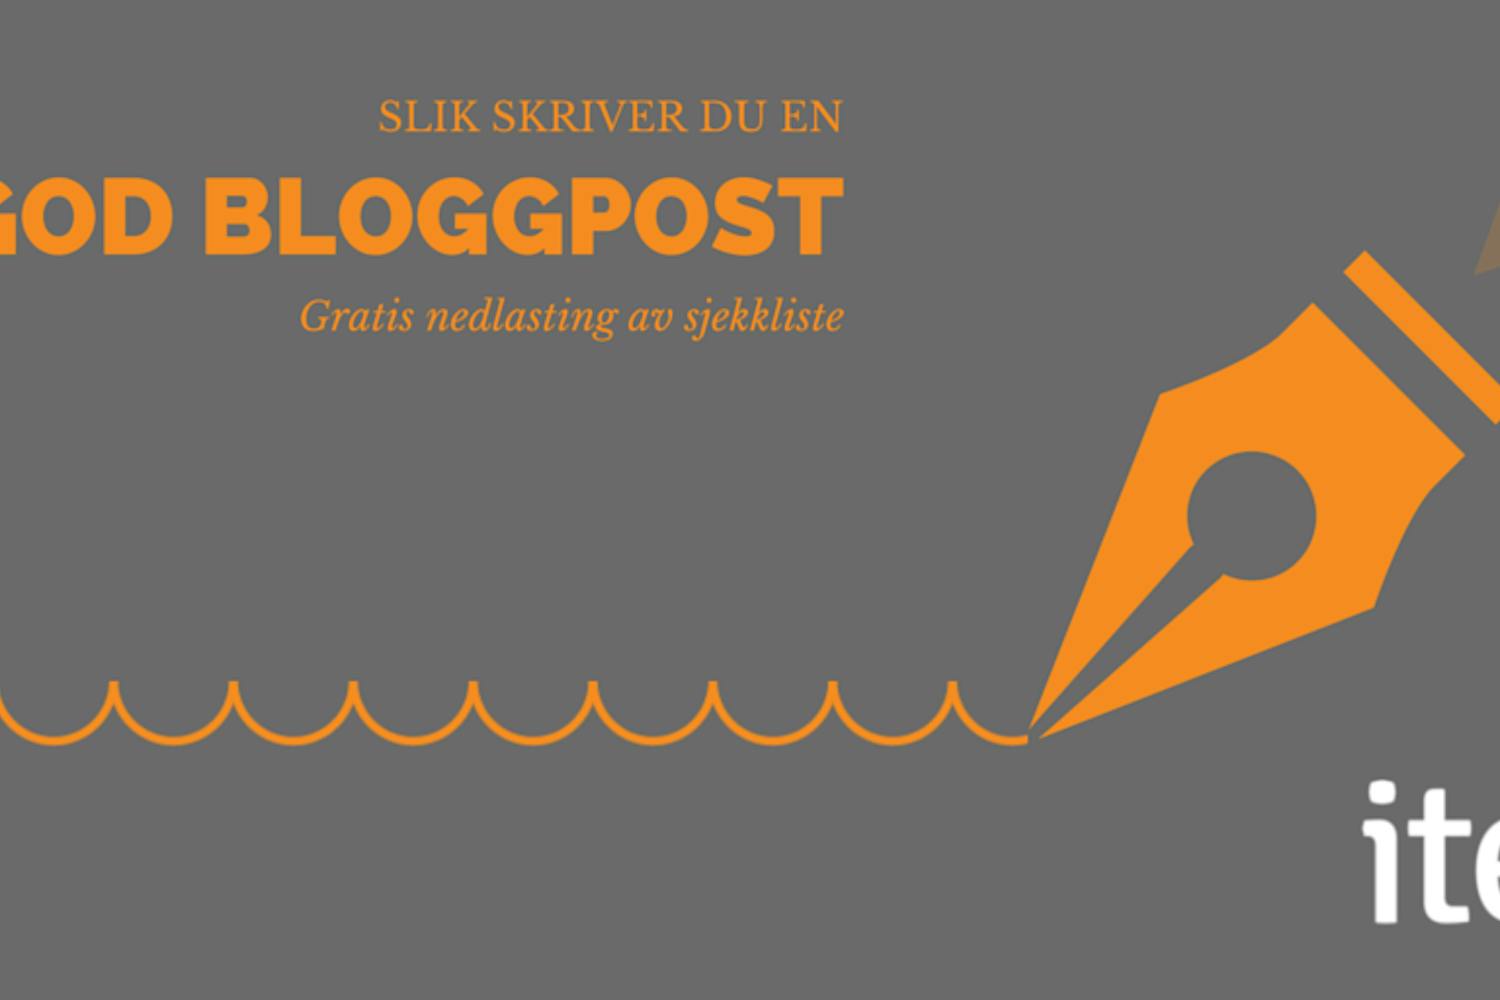 Grå illustrasjon med oransje penn og tekst "Slik skriver du en god bloggpost. gratis nedlasting av sjekkliste"